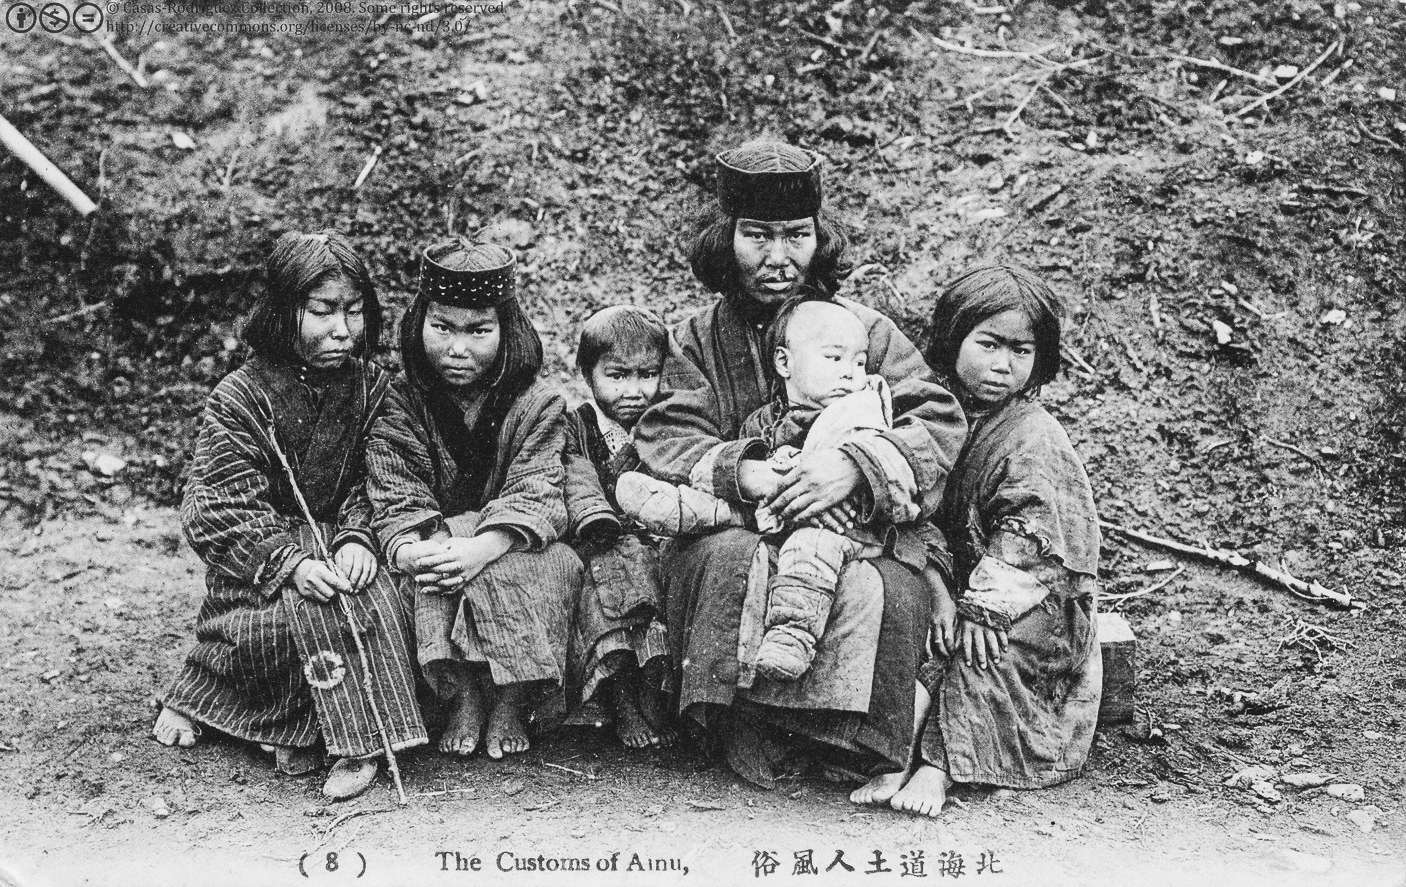 Οι Ainu (ονομάζονται επίσης Ezo στα ιστορικά κείμενα) είναι μια εθνική ομάδα ιθαγενών στο Hokkaidō, στα νησιά Kuril, και σε μεγάλο μέρος της Σαχαλίνης. Πιθανότατα υπάρχουν πάνω από 150,000 Αϊνού σήμερα. Ωστόσο, ο ακριβής αριθμός δεν είναι γνωστός καθώς πολλοί Αϊνού κρύβουν την καταγωγή τους λόγω φυλετικών ζητημάτων στην Ιαπωνία